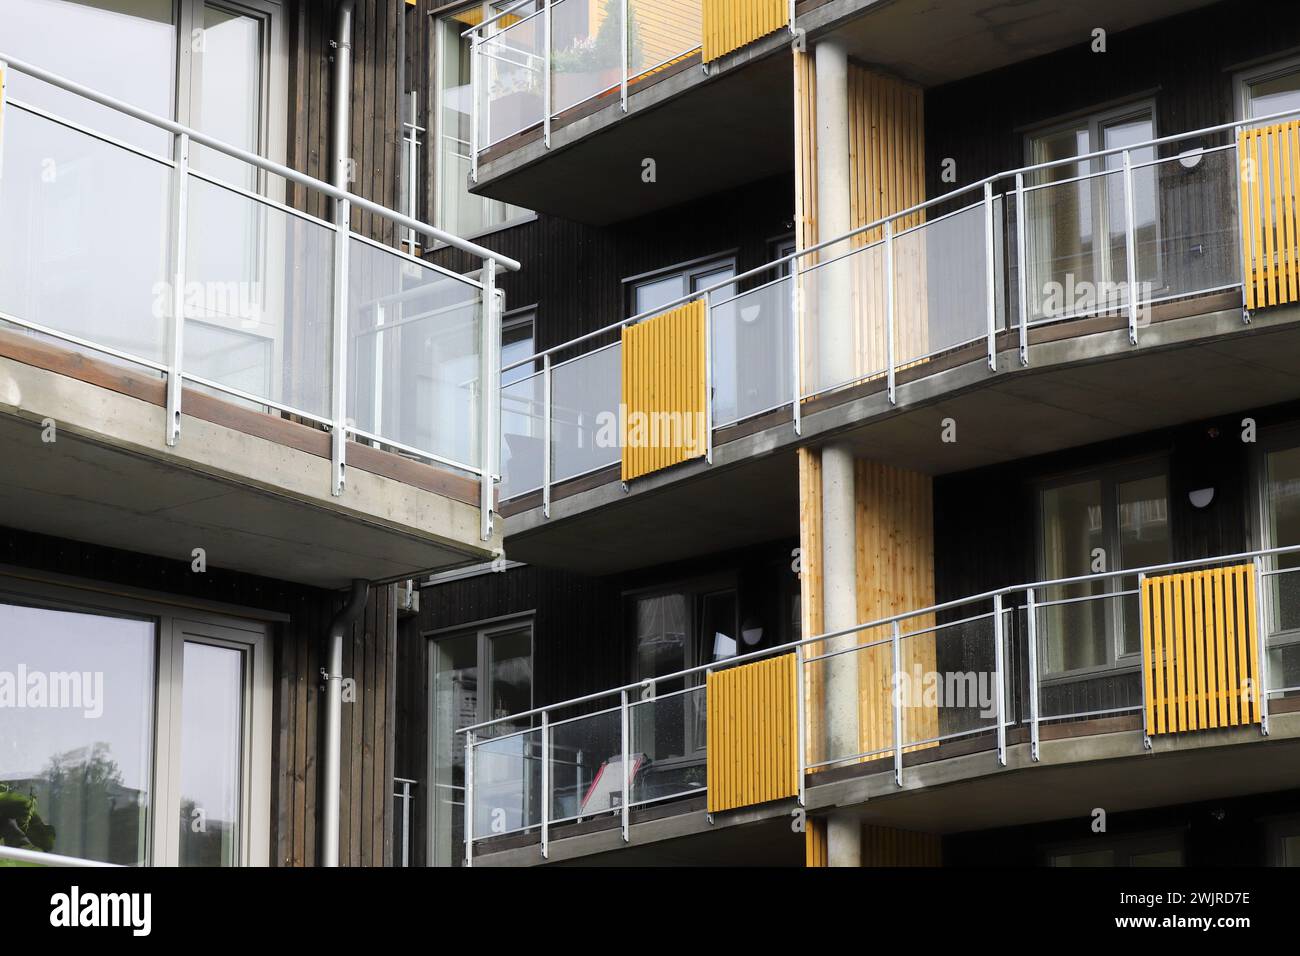 Vue rapprochée d'un immeuble d'appartements moderne avec balcons. Banque D'Images